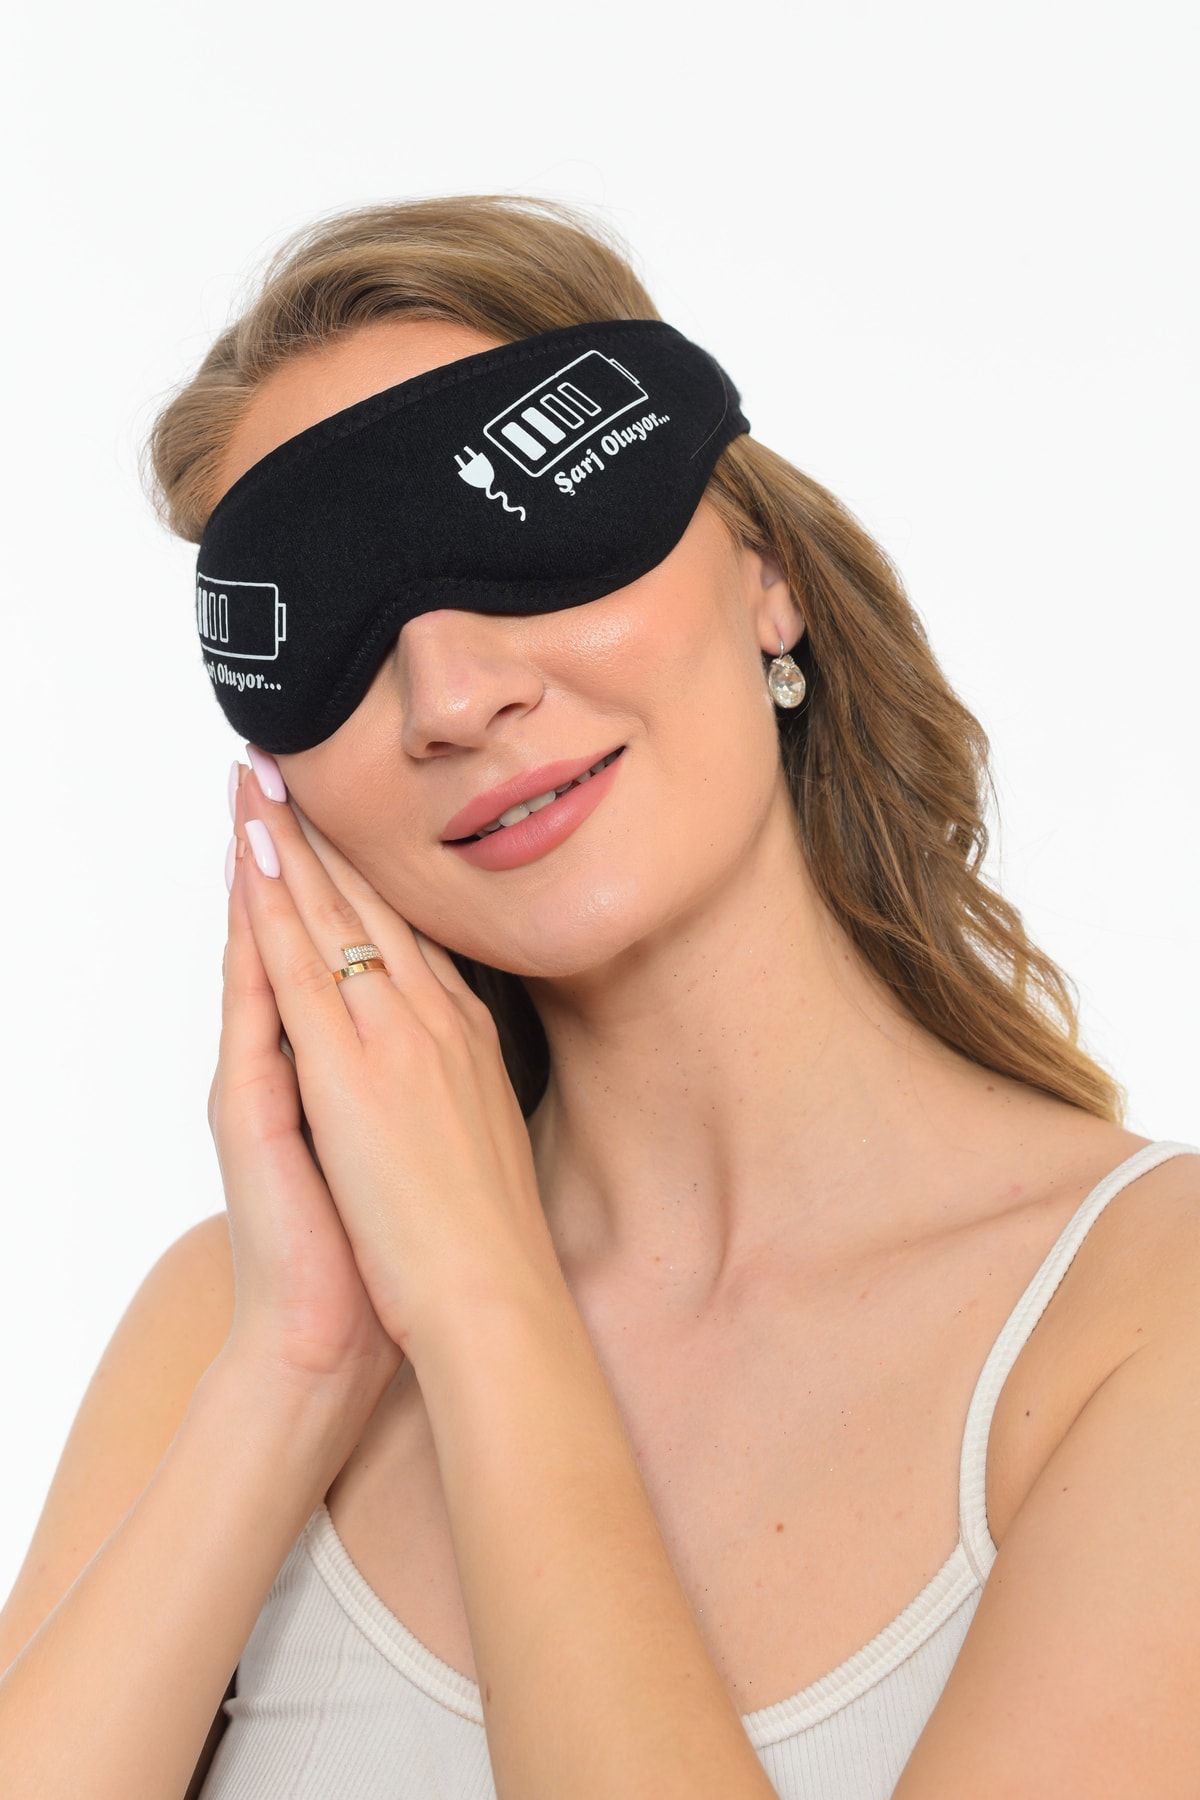 Sh Mağazacılık Pamuklu Siyah Yıkanabilir Göz Bandı Uyku Maskesi Şarj Oluyor